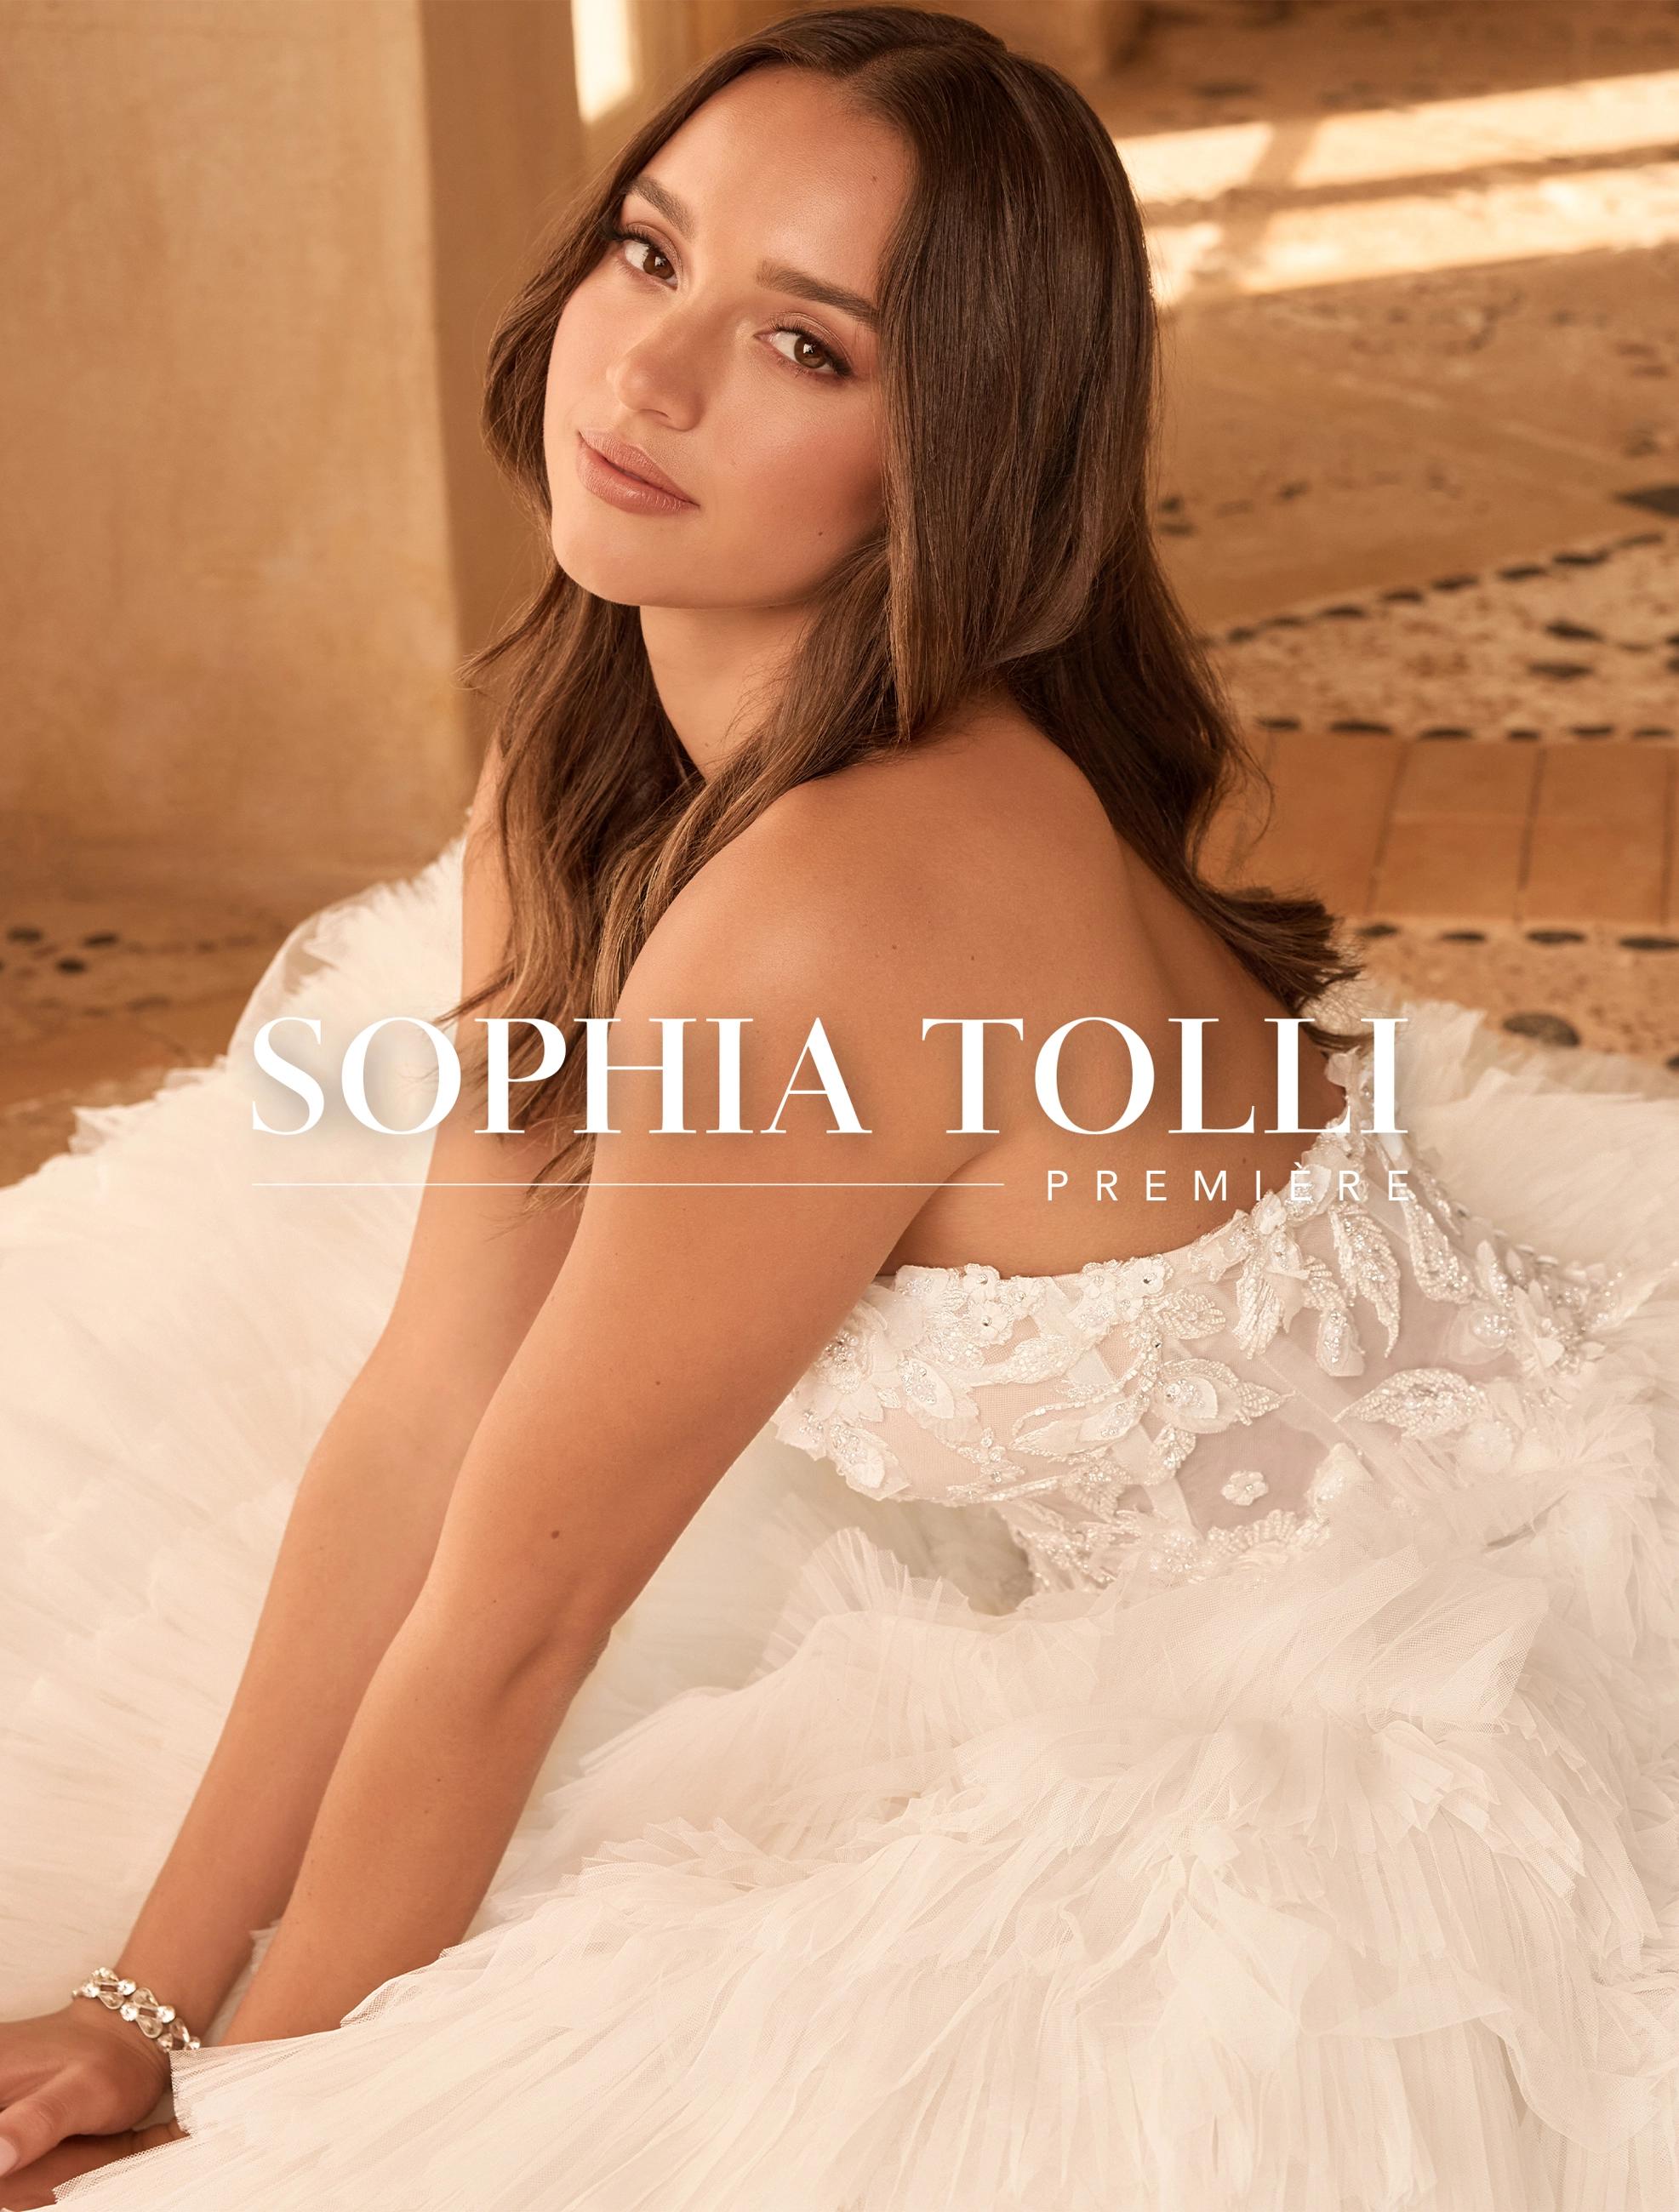 Sophia Tolli Premiere Mobile